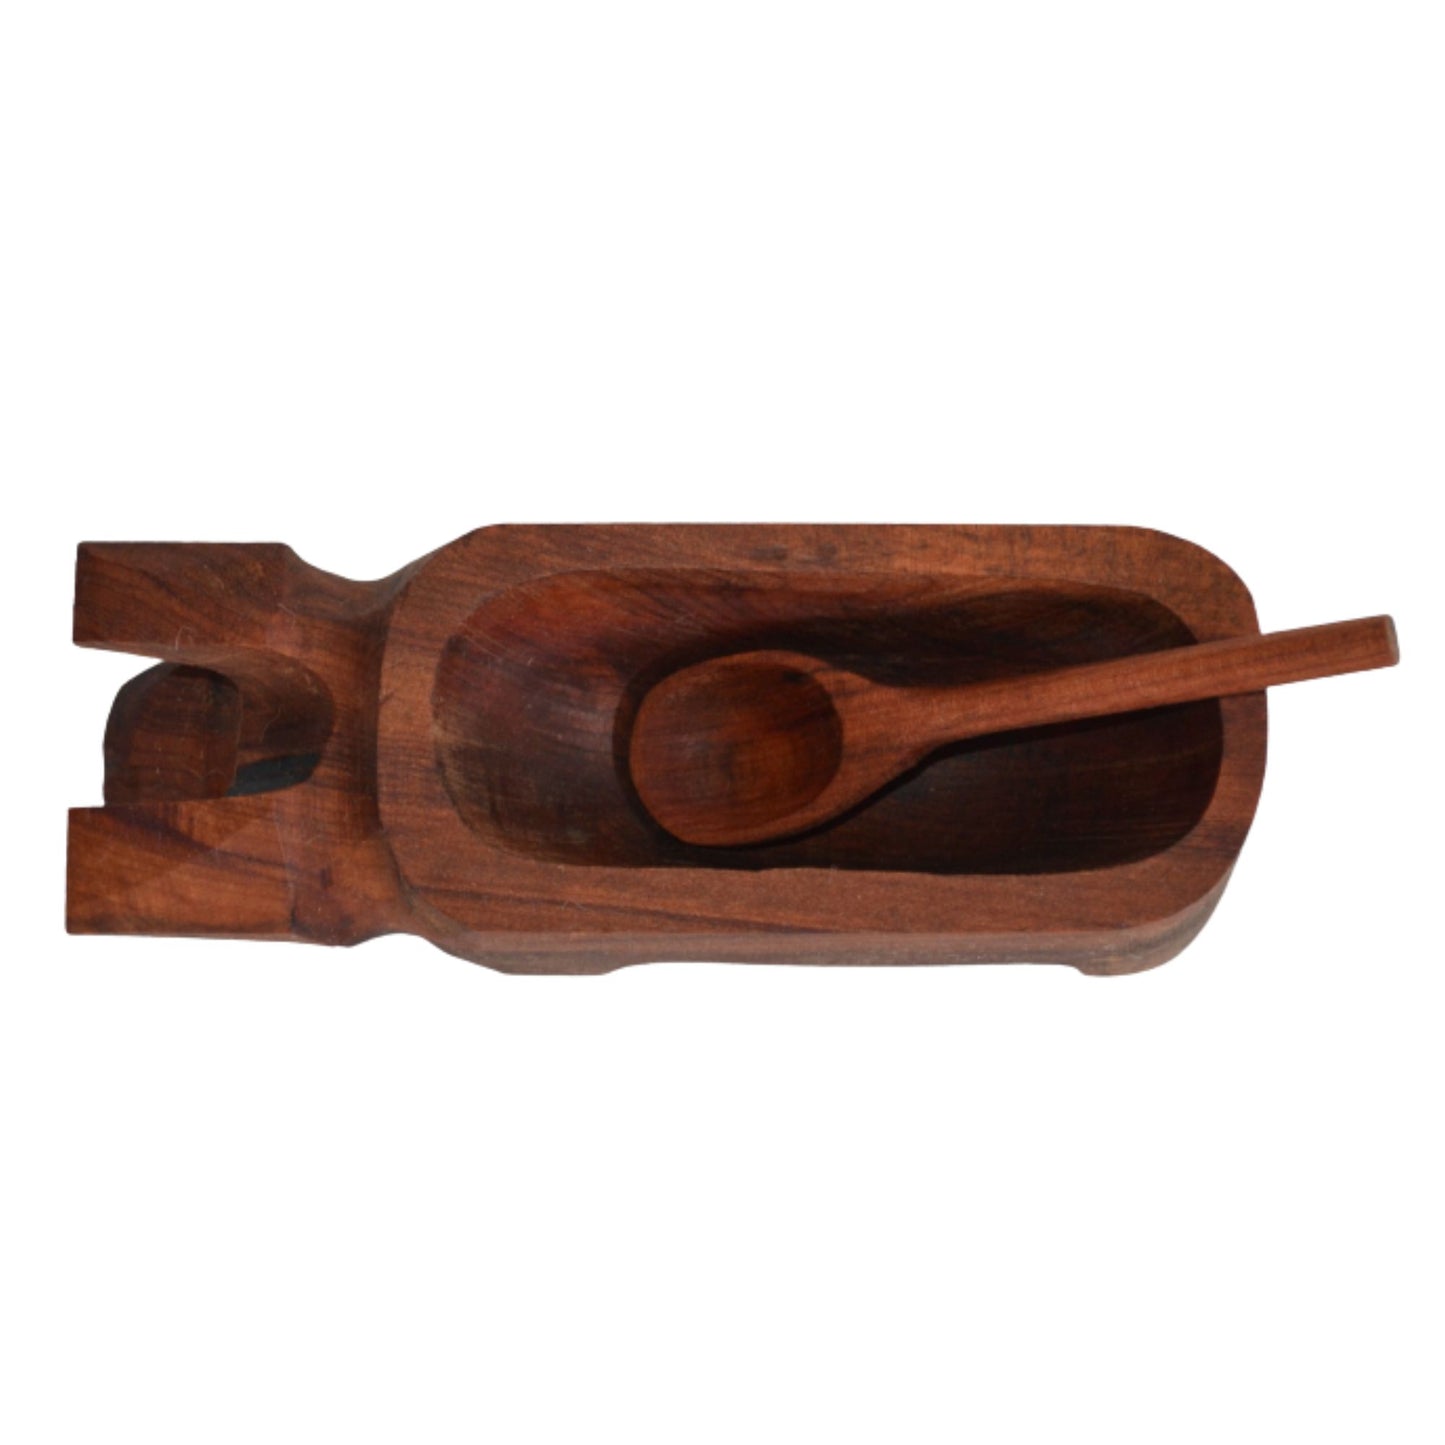 Chancho madera para pebre 20x6x5 cm con cuchara 11 cm raulí